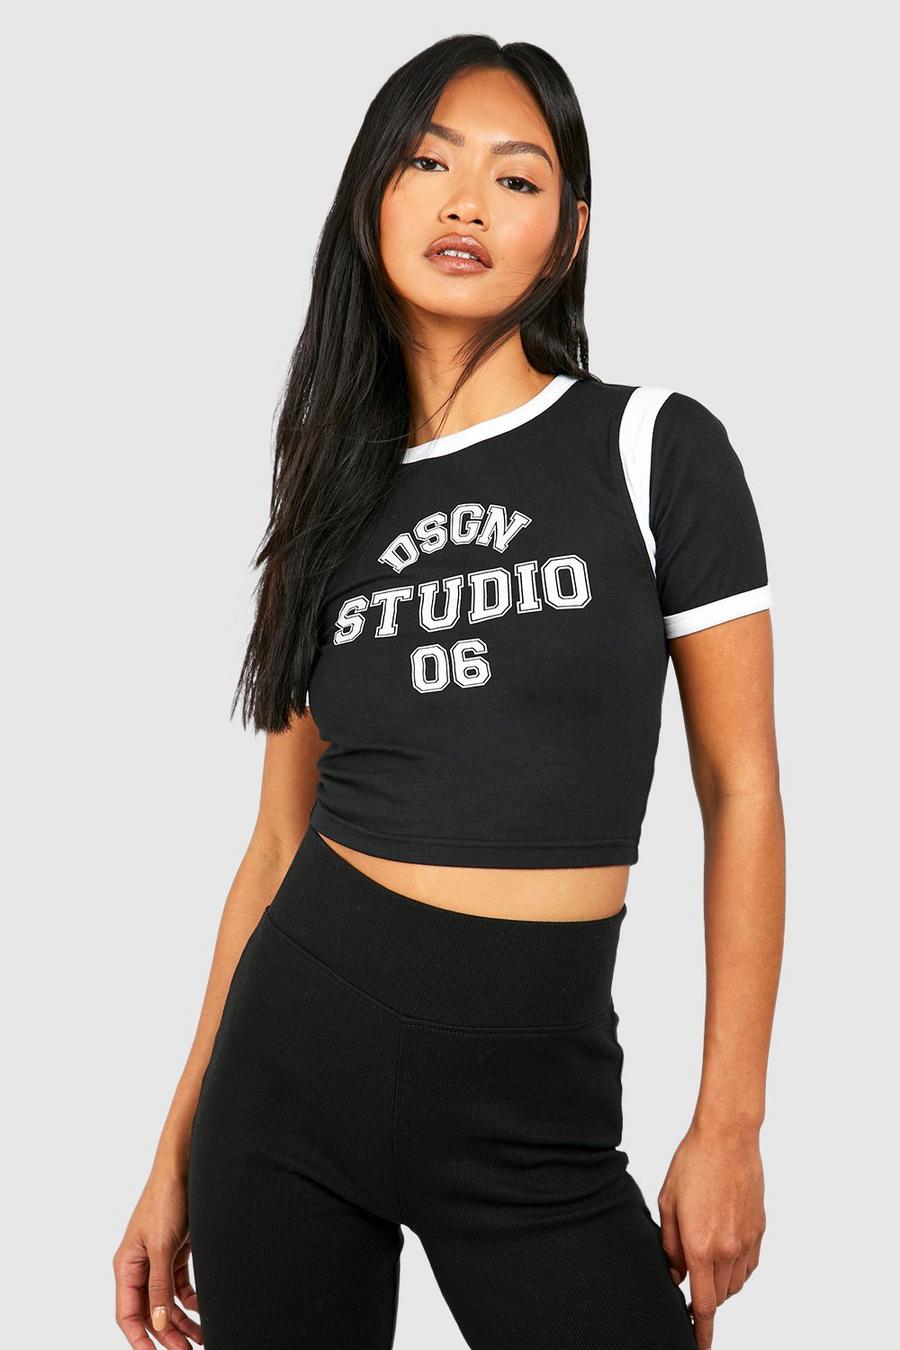 Camiseta con estampado Dsgn Studio y colores en bloque, Black